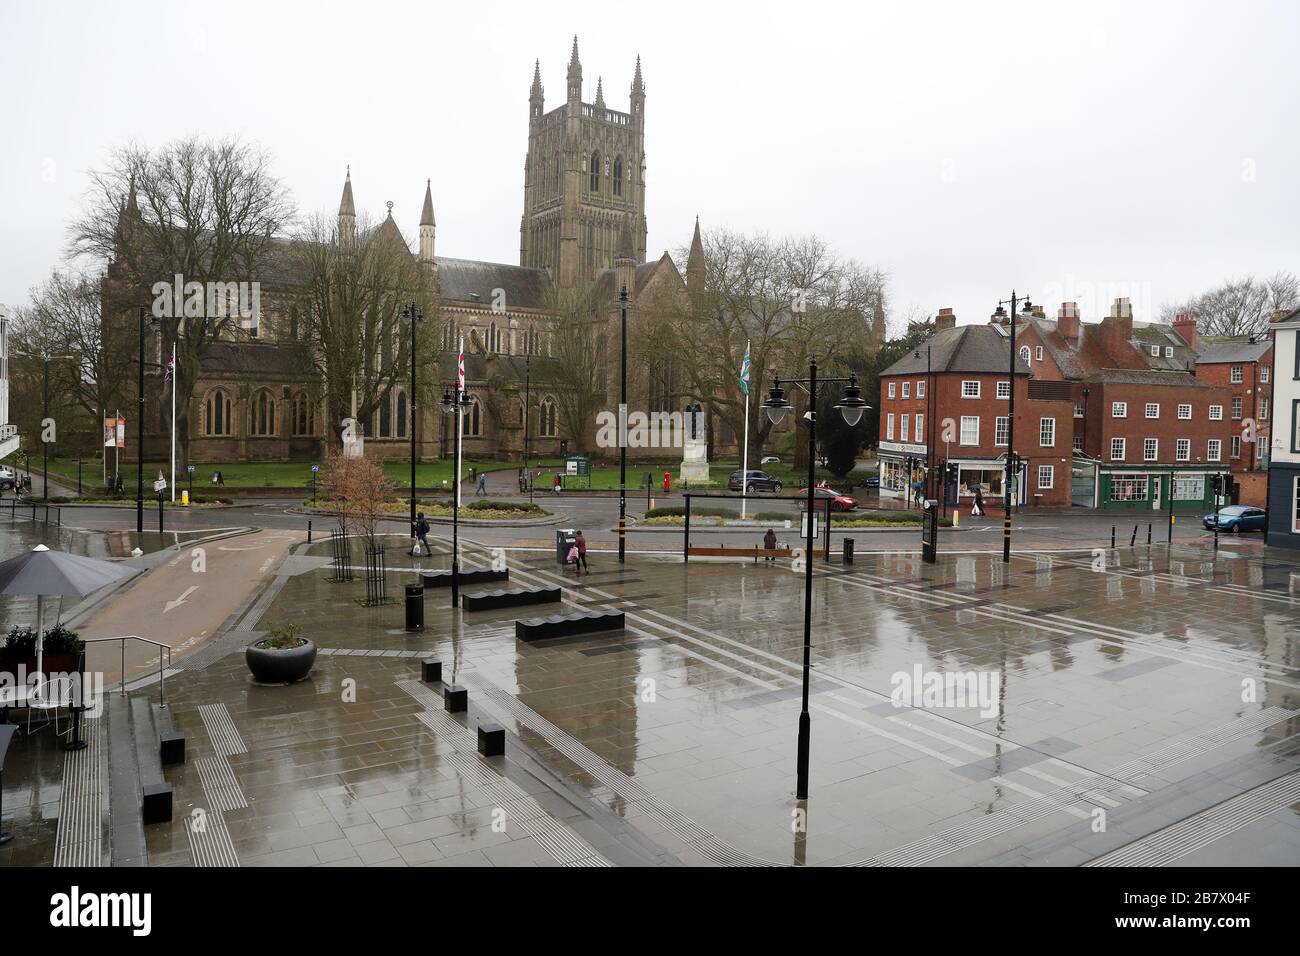 Una Catedral desierta SquareIn Worcester durante la hora de almuerzo normalmente ocupada, ya que el número de muertes por coronavirus en el Reino Unido llegó a 71 personas. Foto de stock